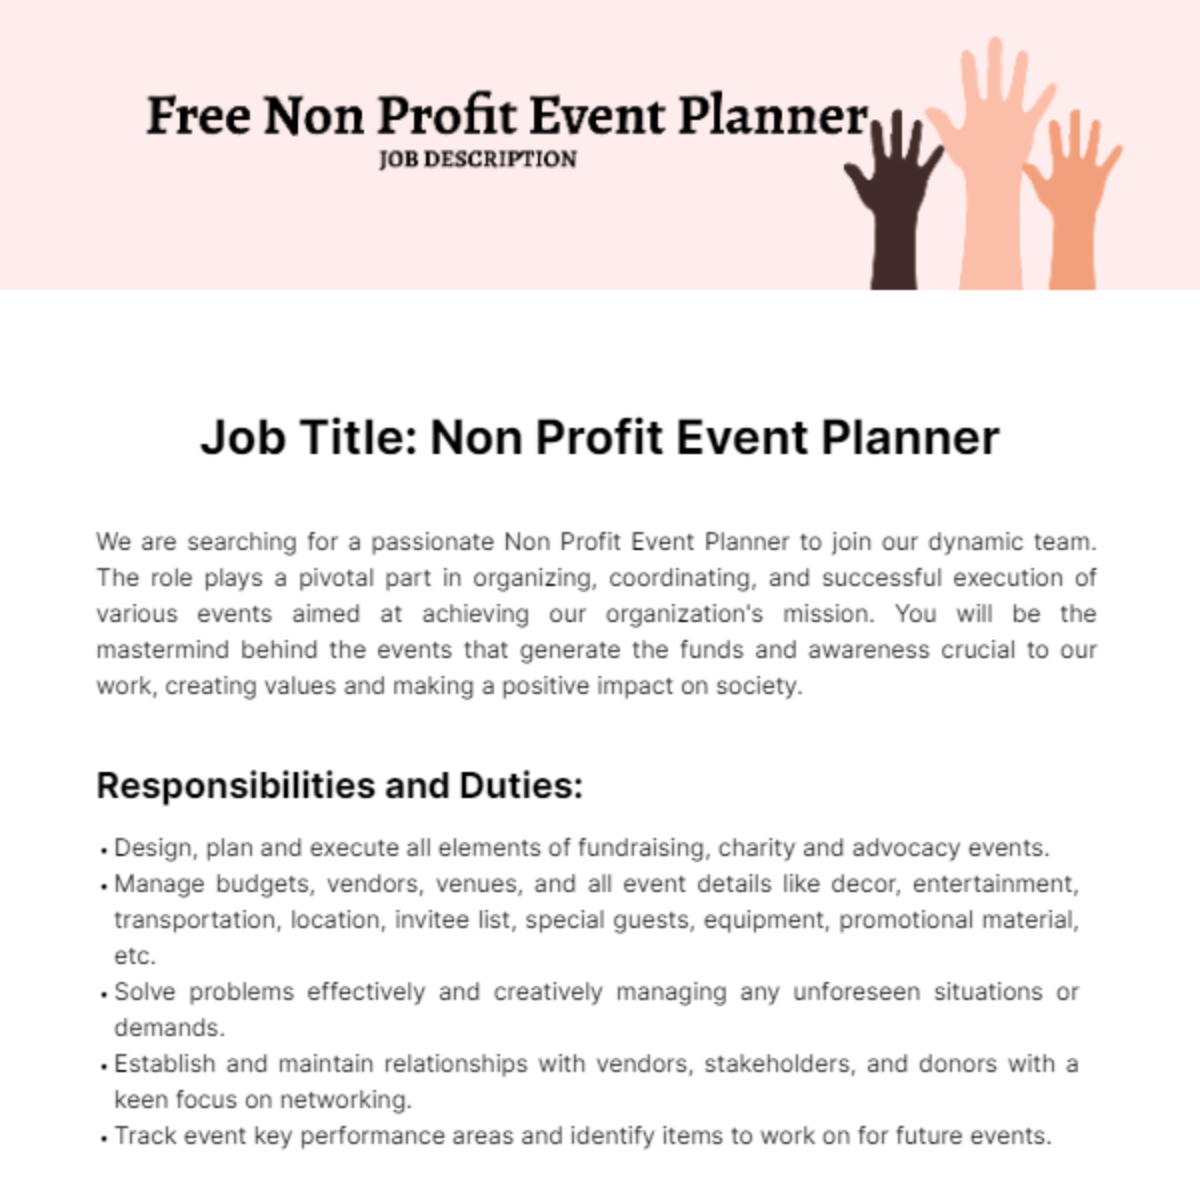 Non Profit Event Planner Job Description Template